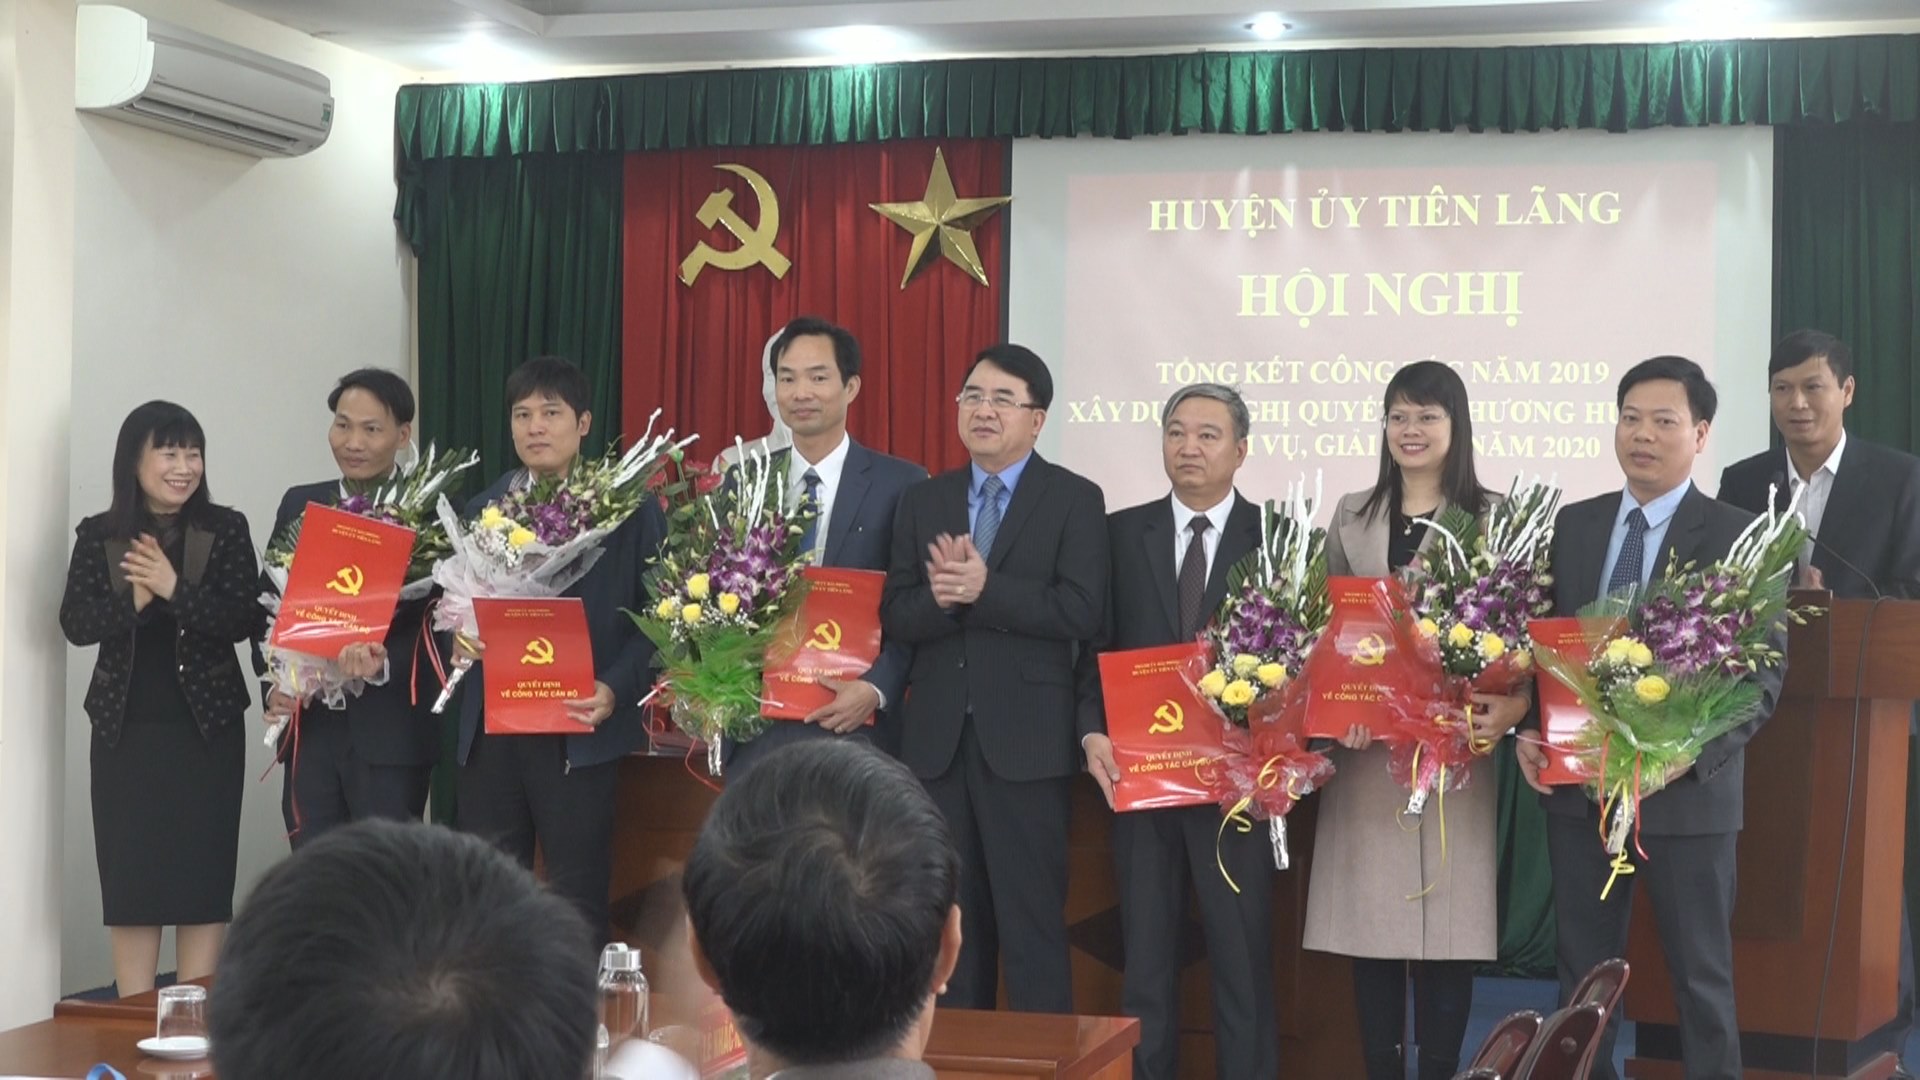 6 đồng chí được bổ sung tham gia Ban chấp hành Đảng bộ huyện Tiên Lãng, nhiệm kỳ 2016-2021